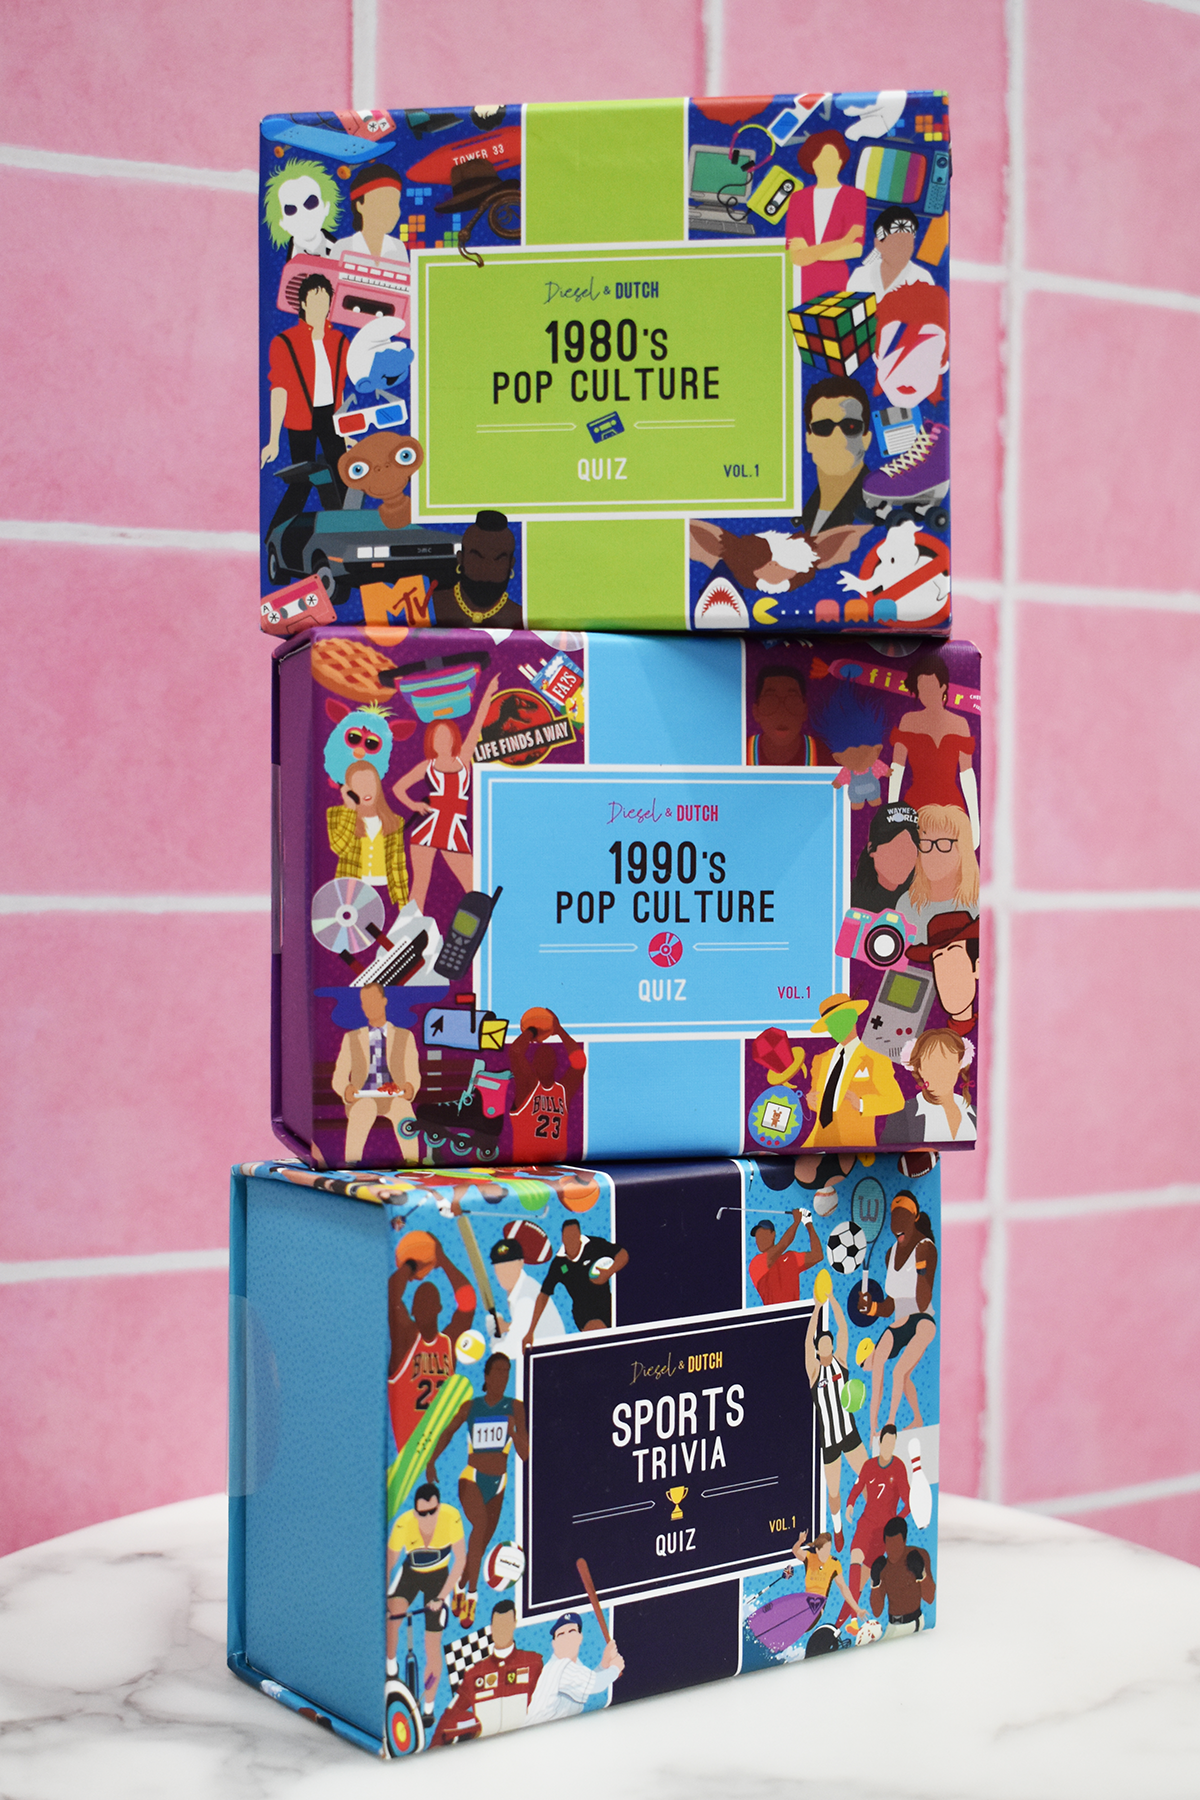 1980's Pop Culture Trivia Box